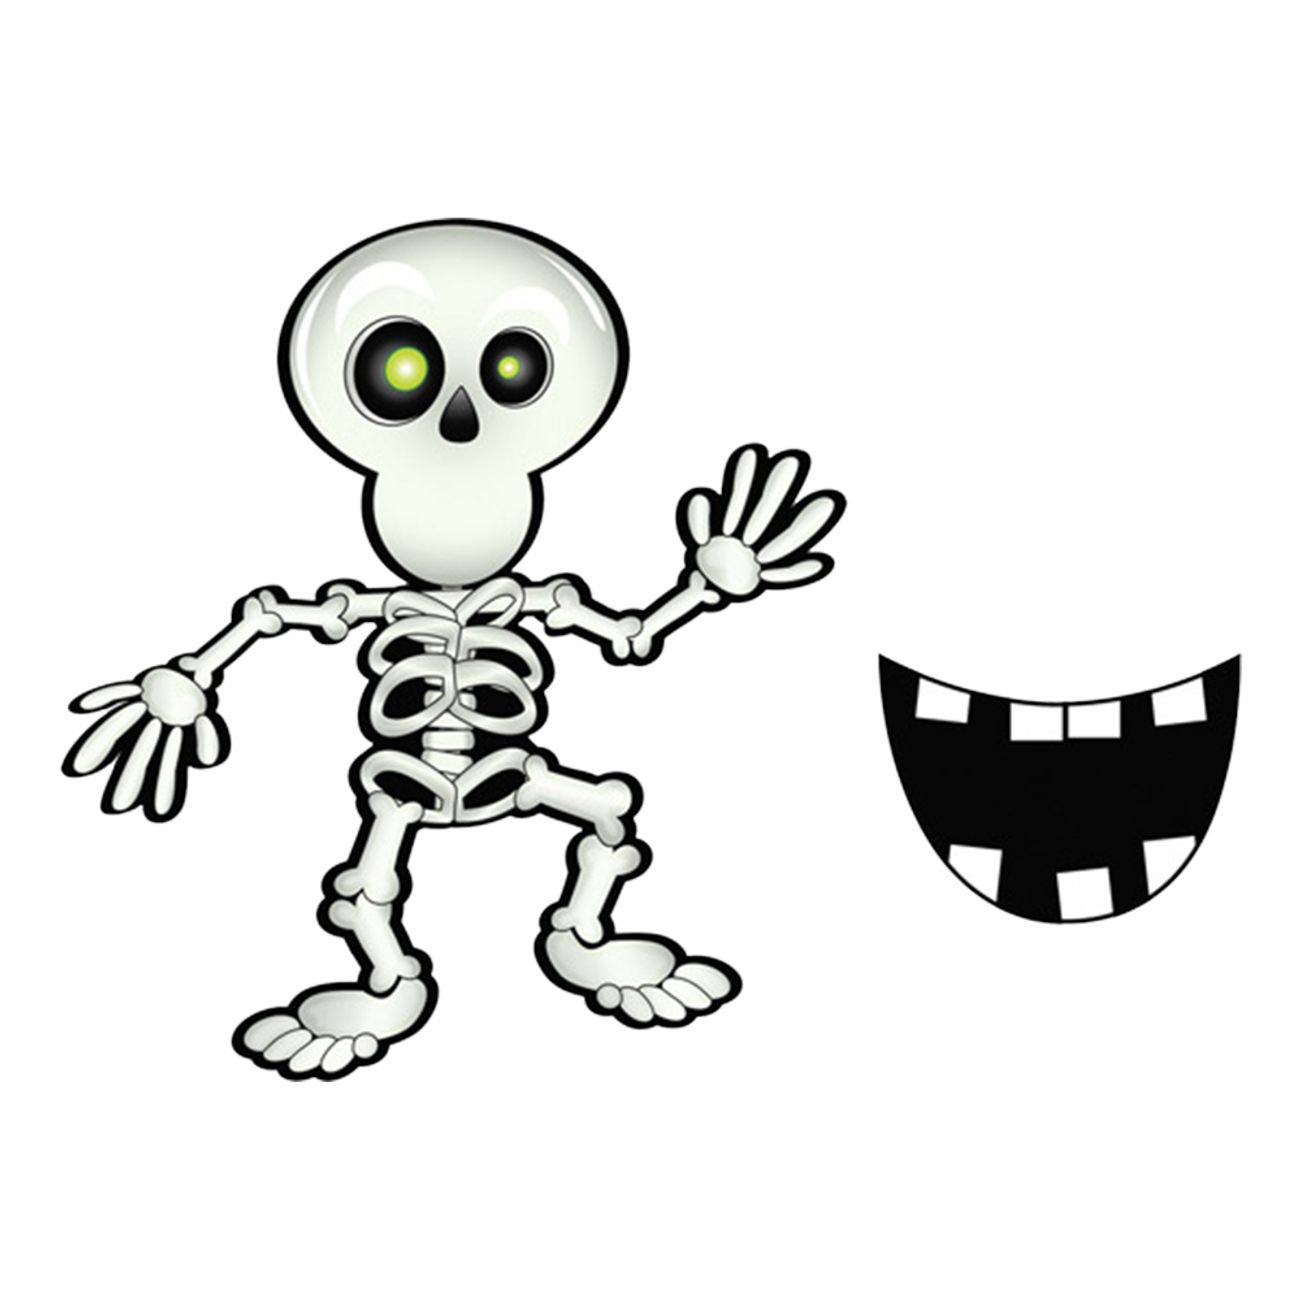 satt-leende-pa-skelettet-spel-98095-2